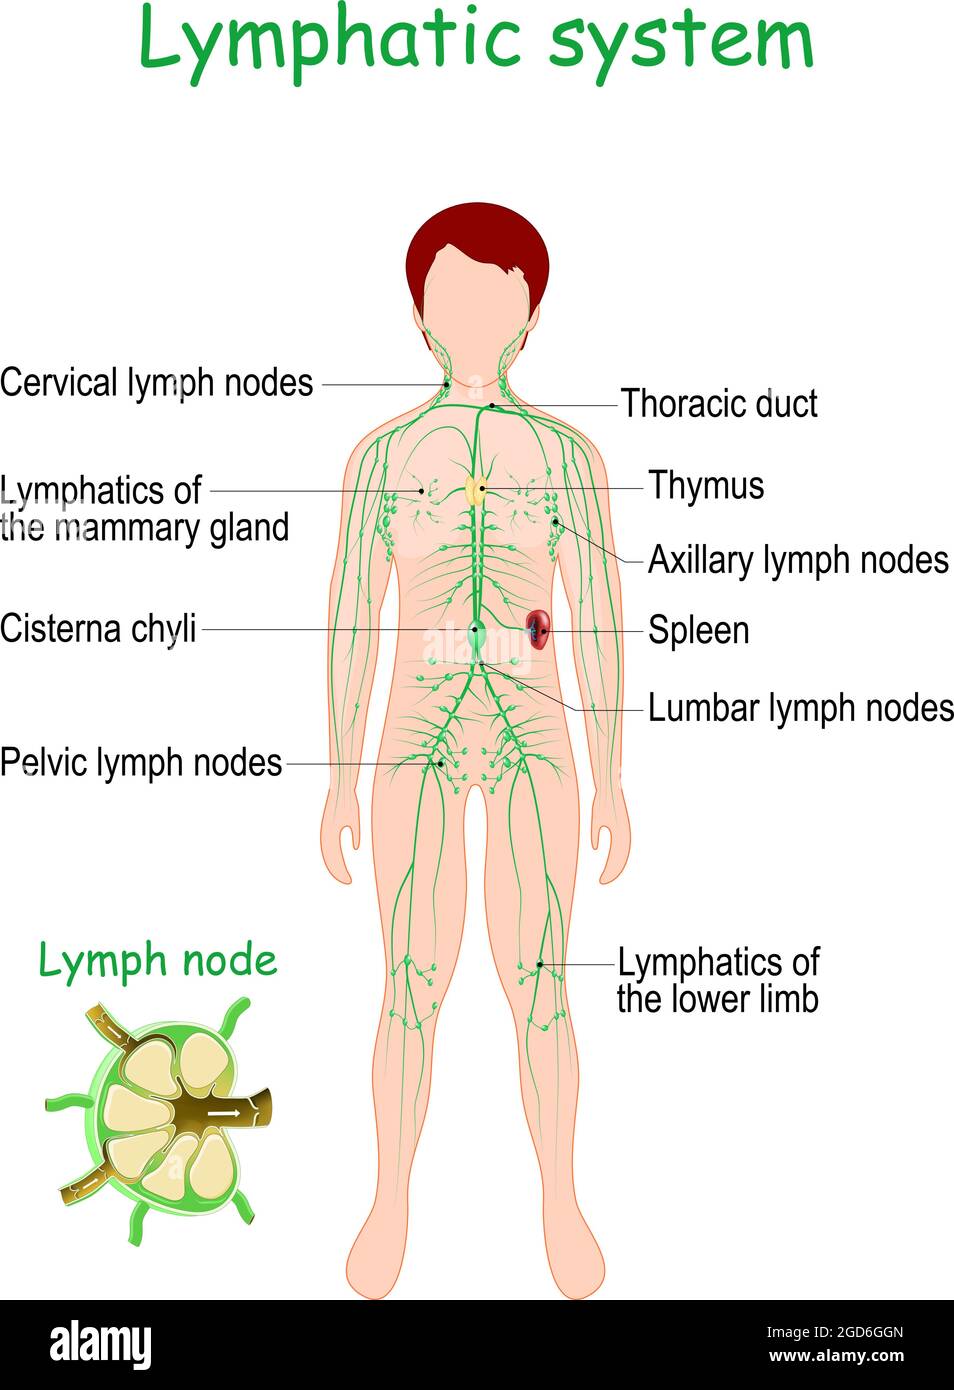 Système lymphatique. Corps humain avec organes lymphoïdes (rate, Thymus), vaisseau lymphatique, ganglions lymphatiques et cisterna chyli. Illustration vectorielle Illustration de Vecteur